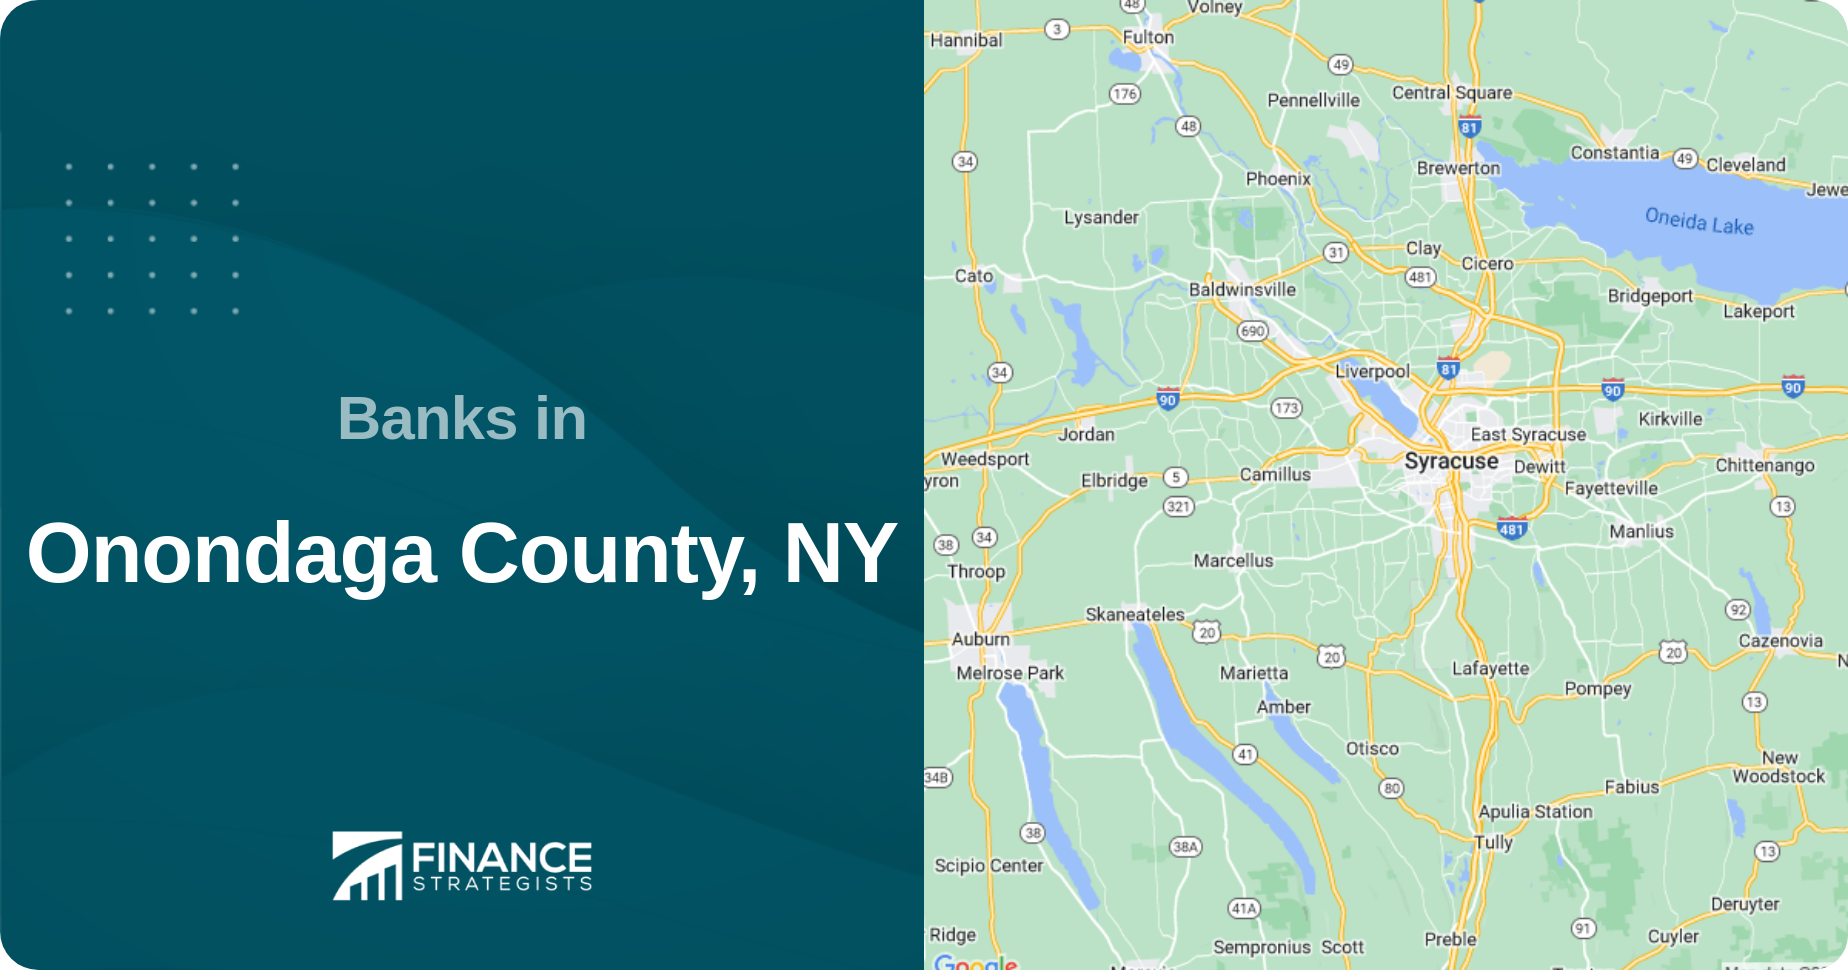 Banks in Onondaga County, NY